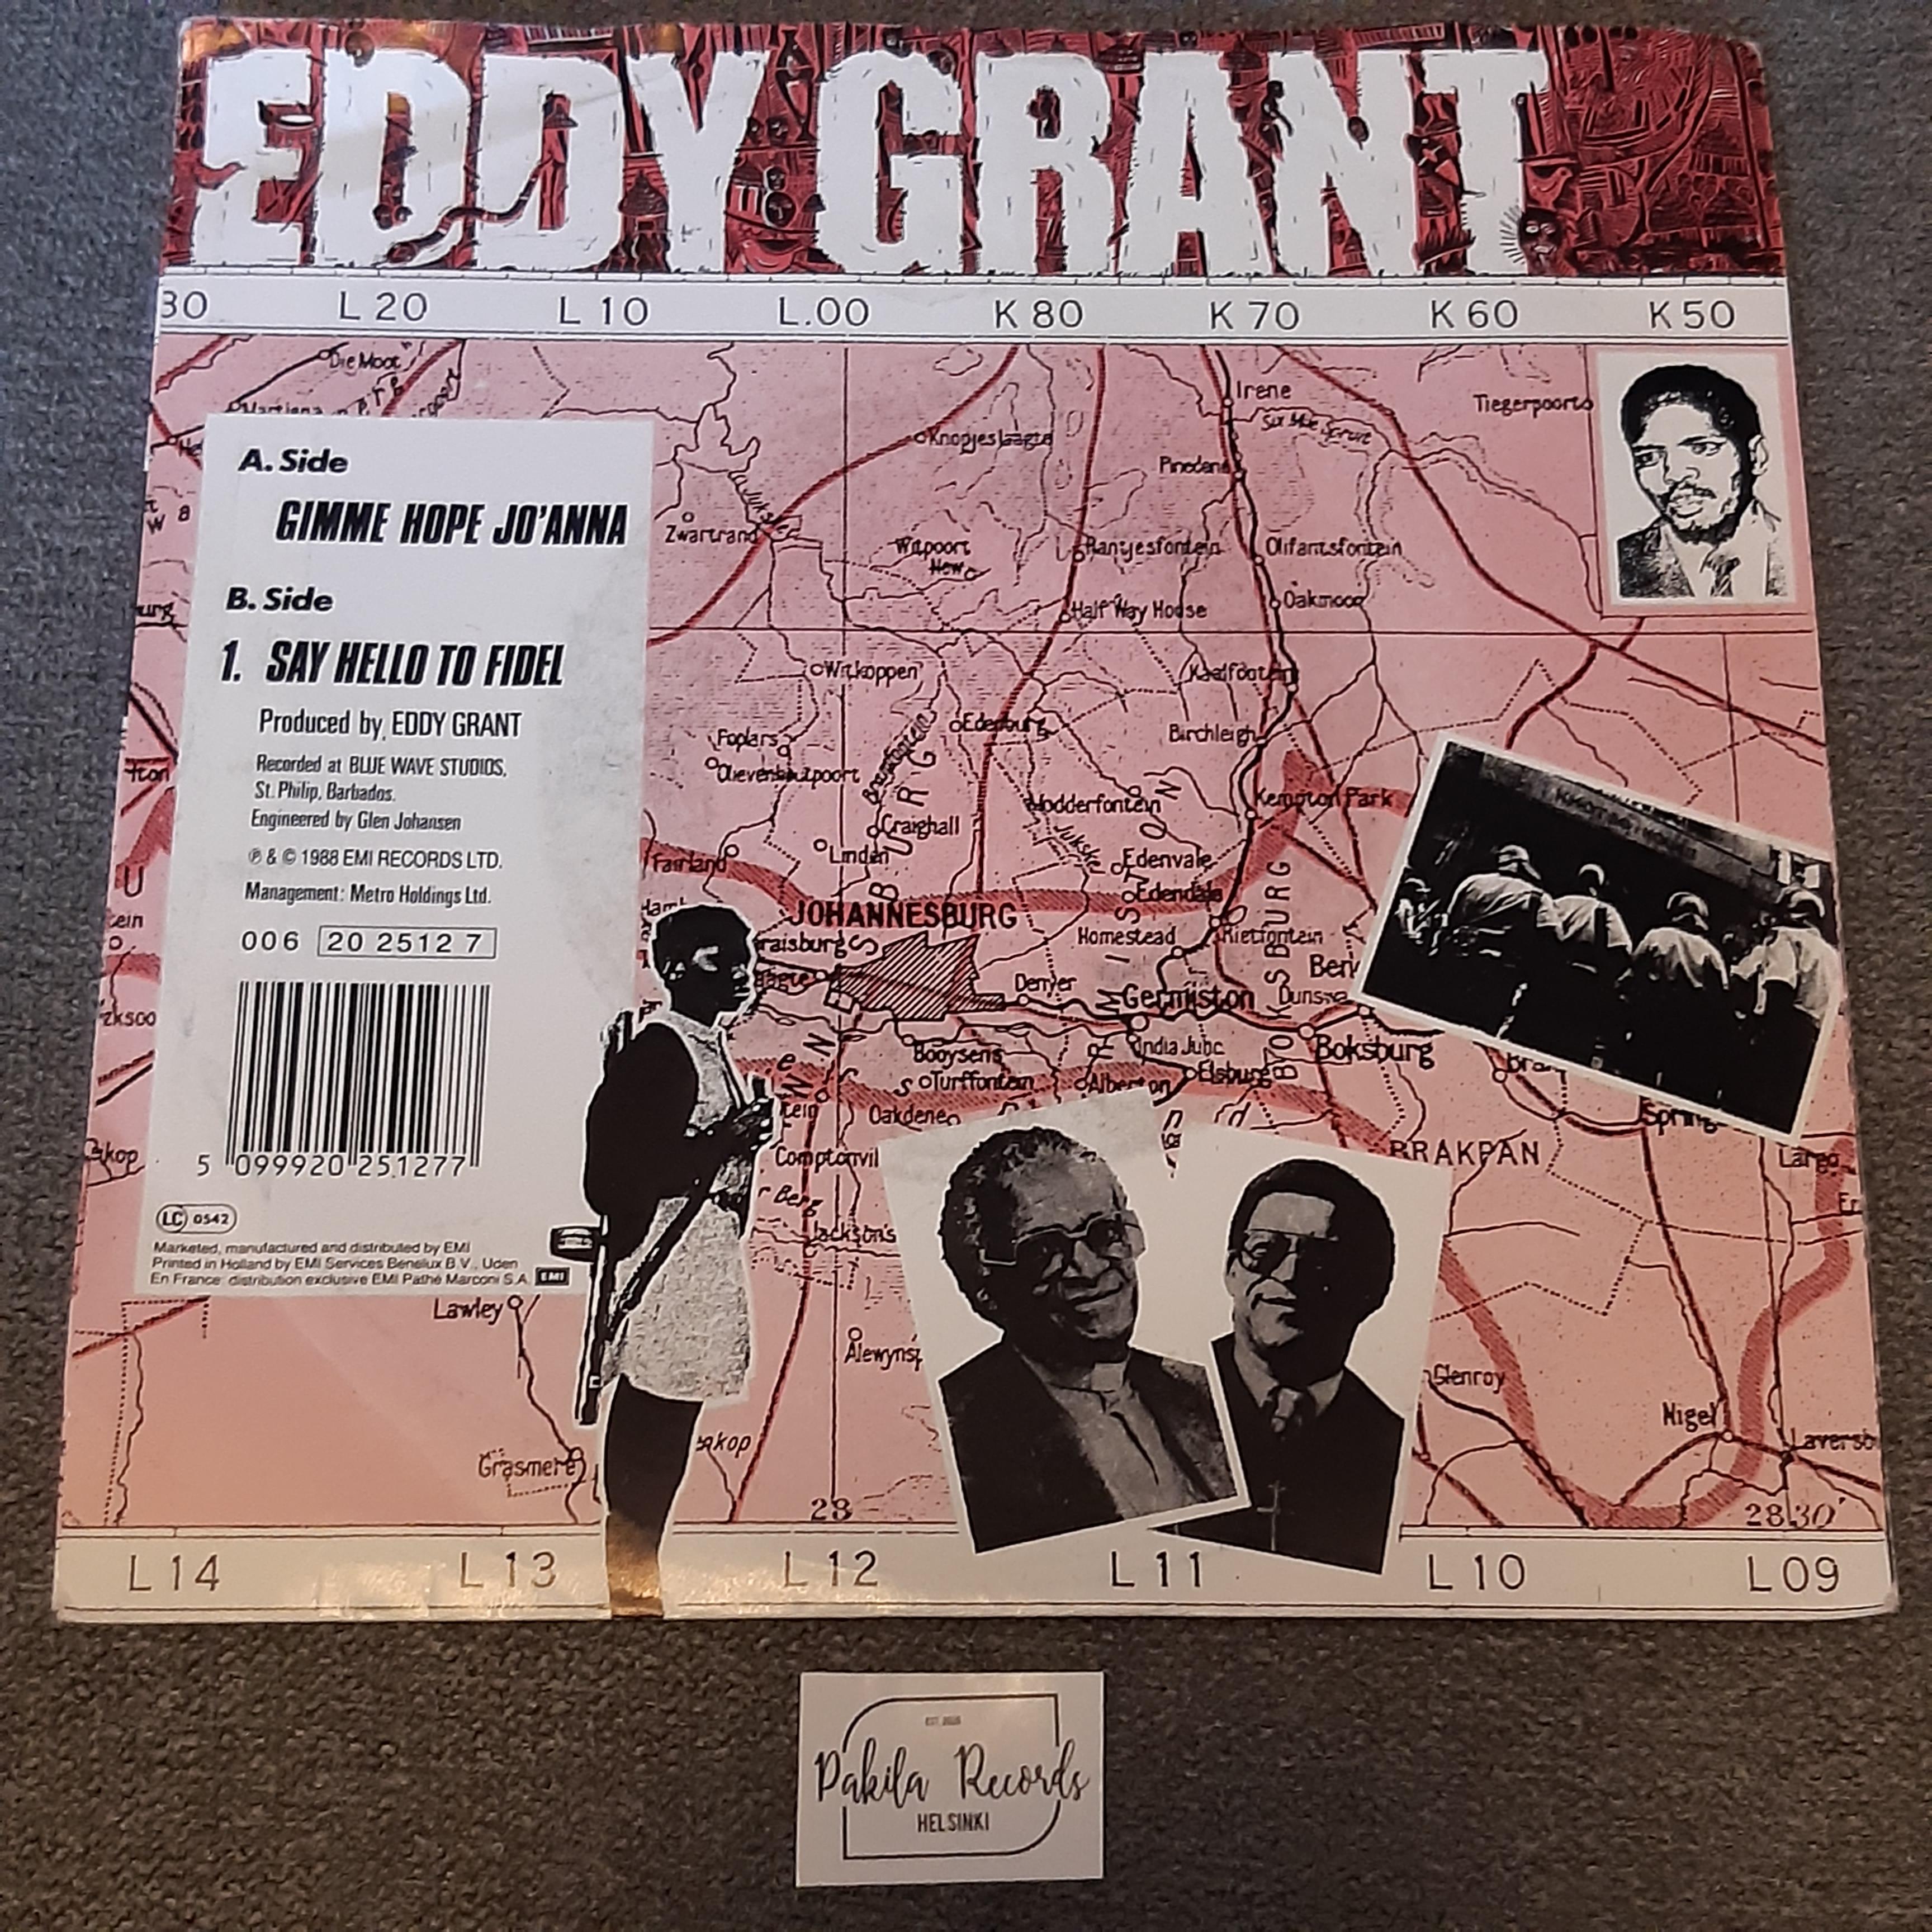 Eddy Grant - Gimme Hope Jo'Anna - Single 7" (käytetty)